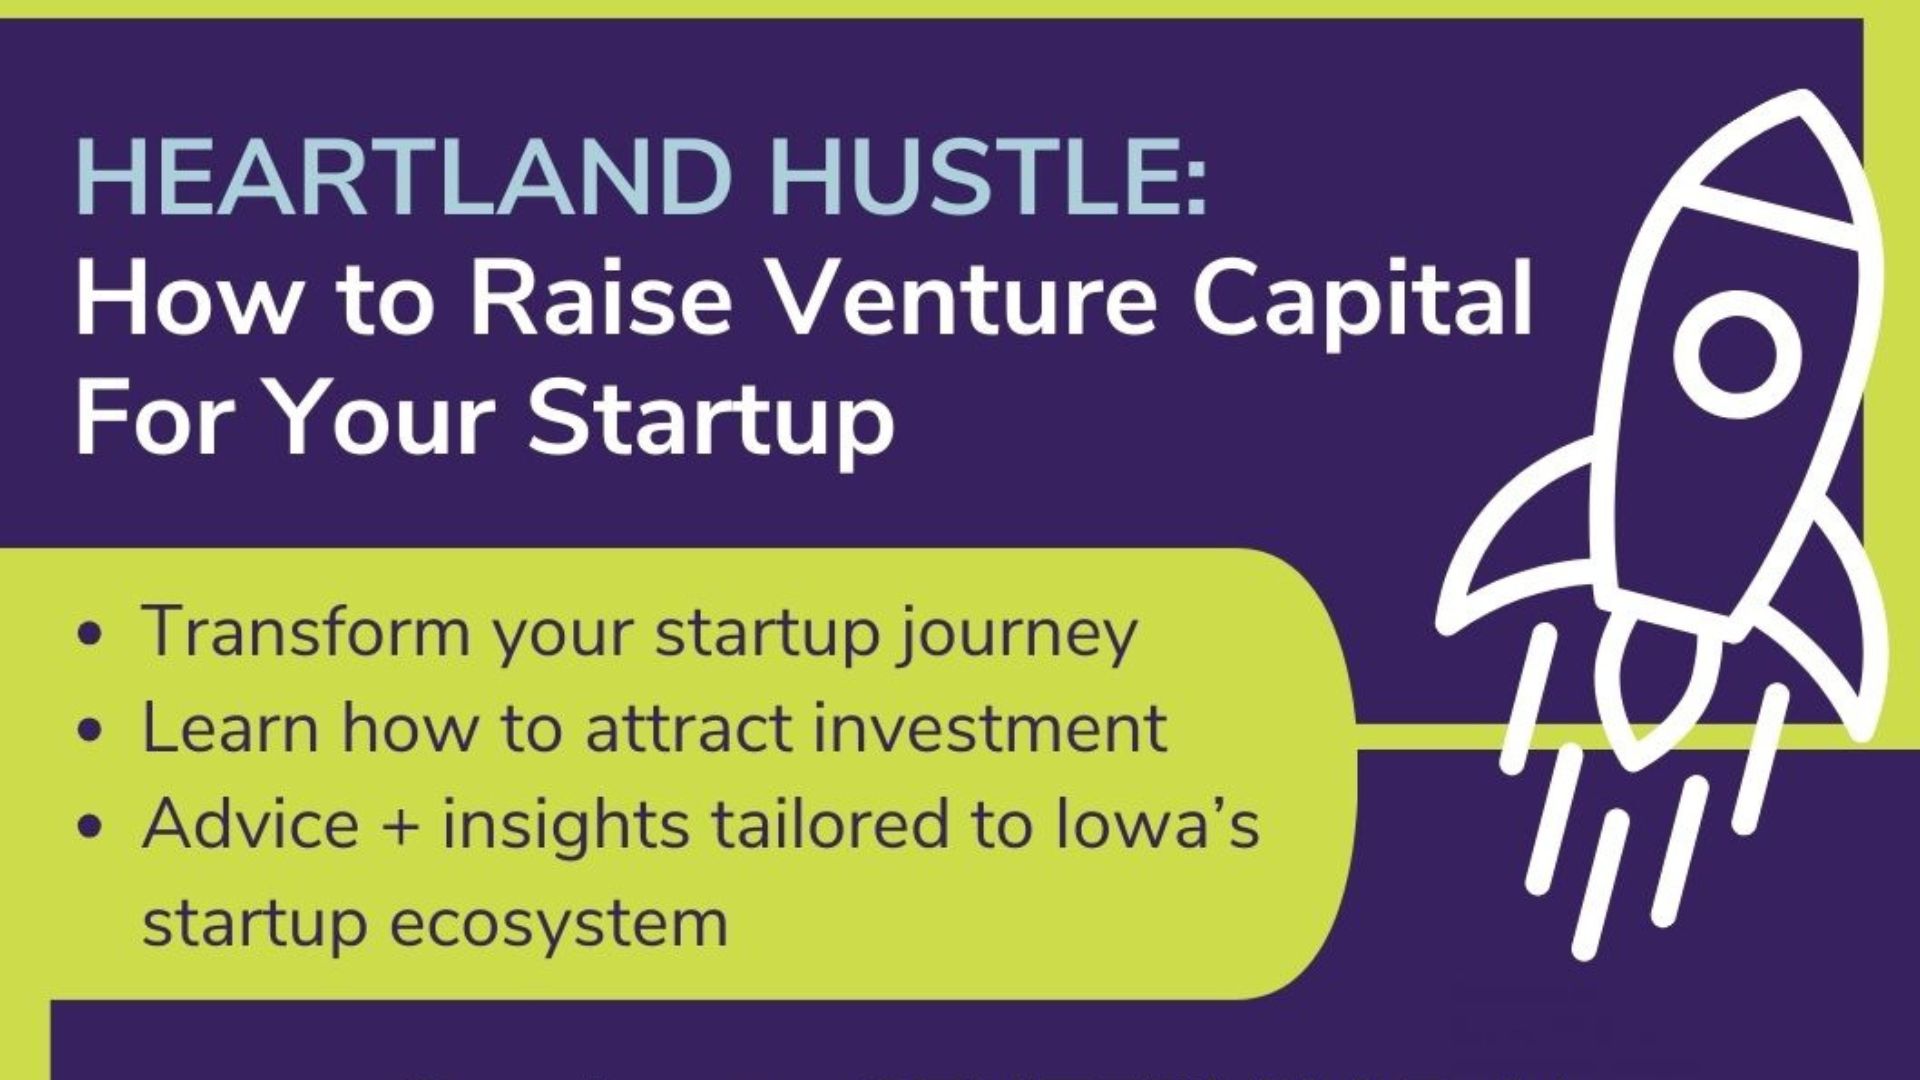 How to Raise Venture Capital Workshop April 16th